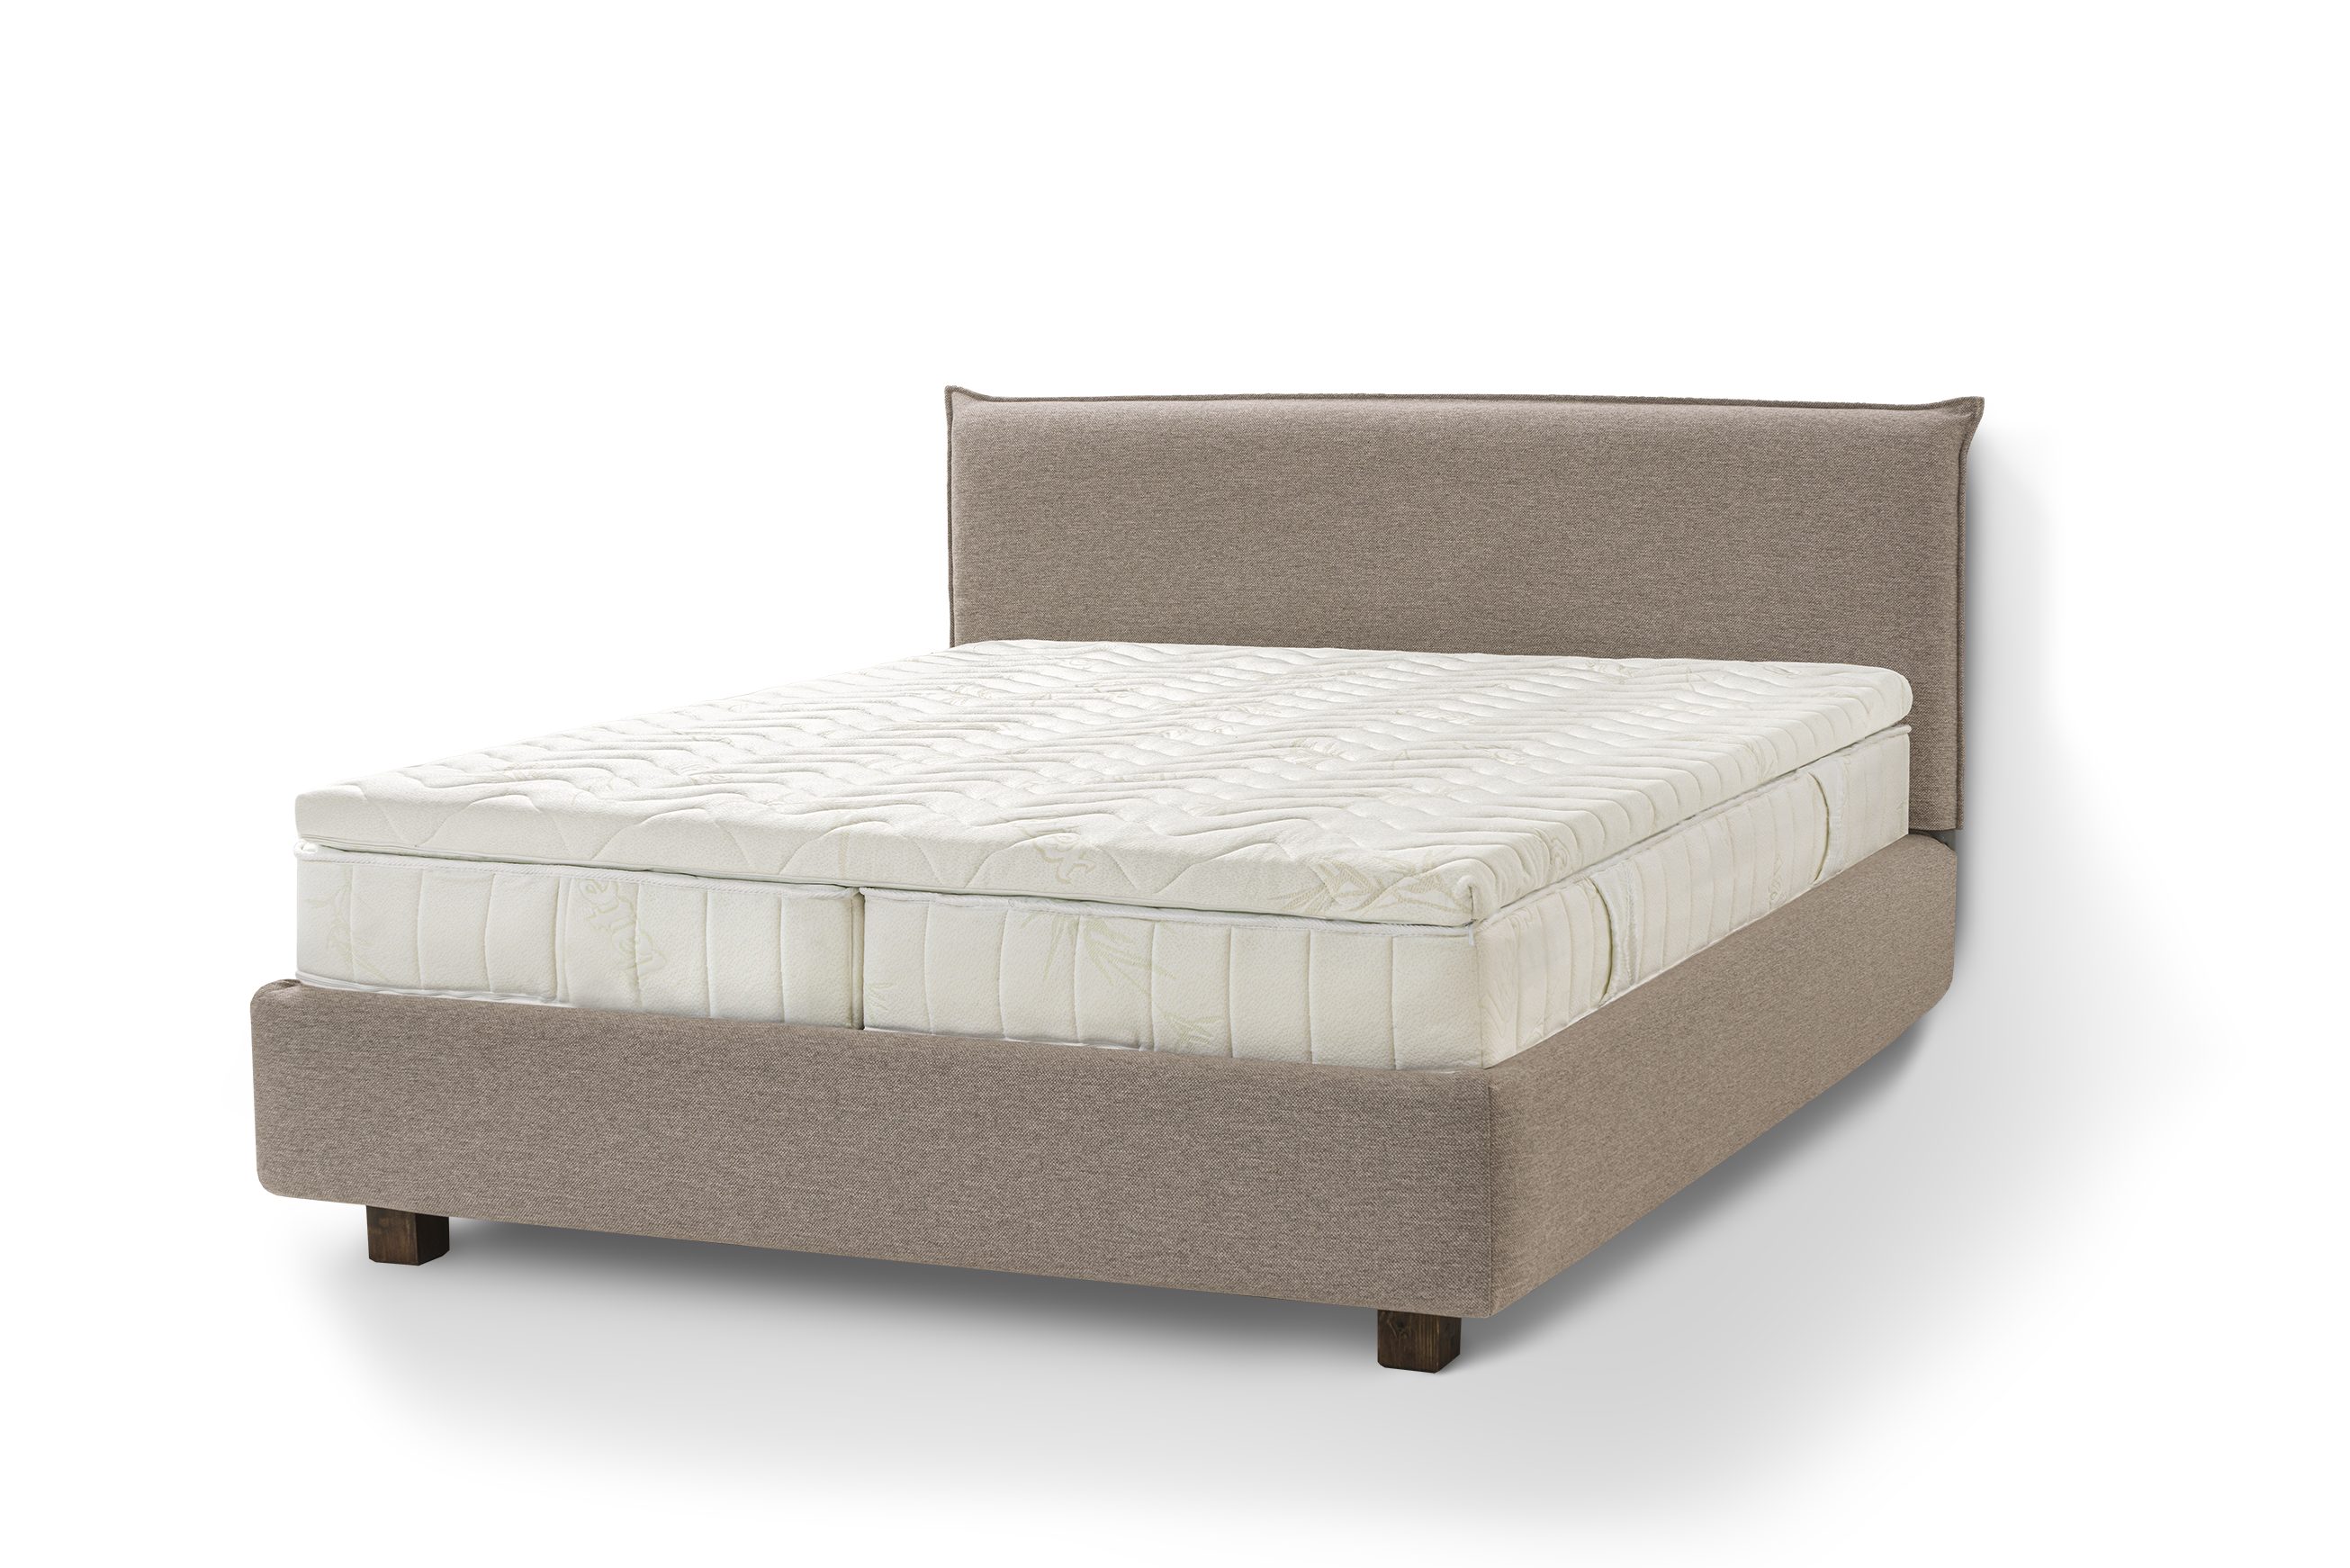 Letti Moderni Holzbett Bett Puro, hergestellt aus hochwertigem Massivholz Siena Dark Beige